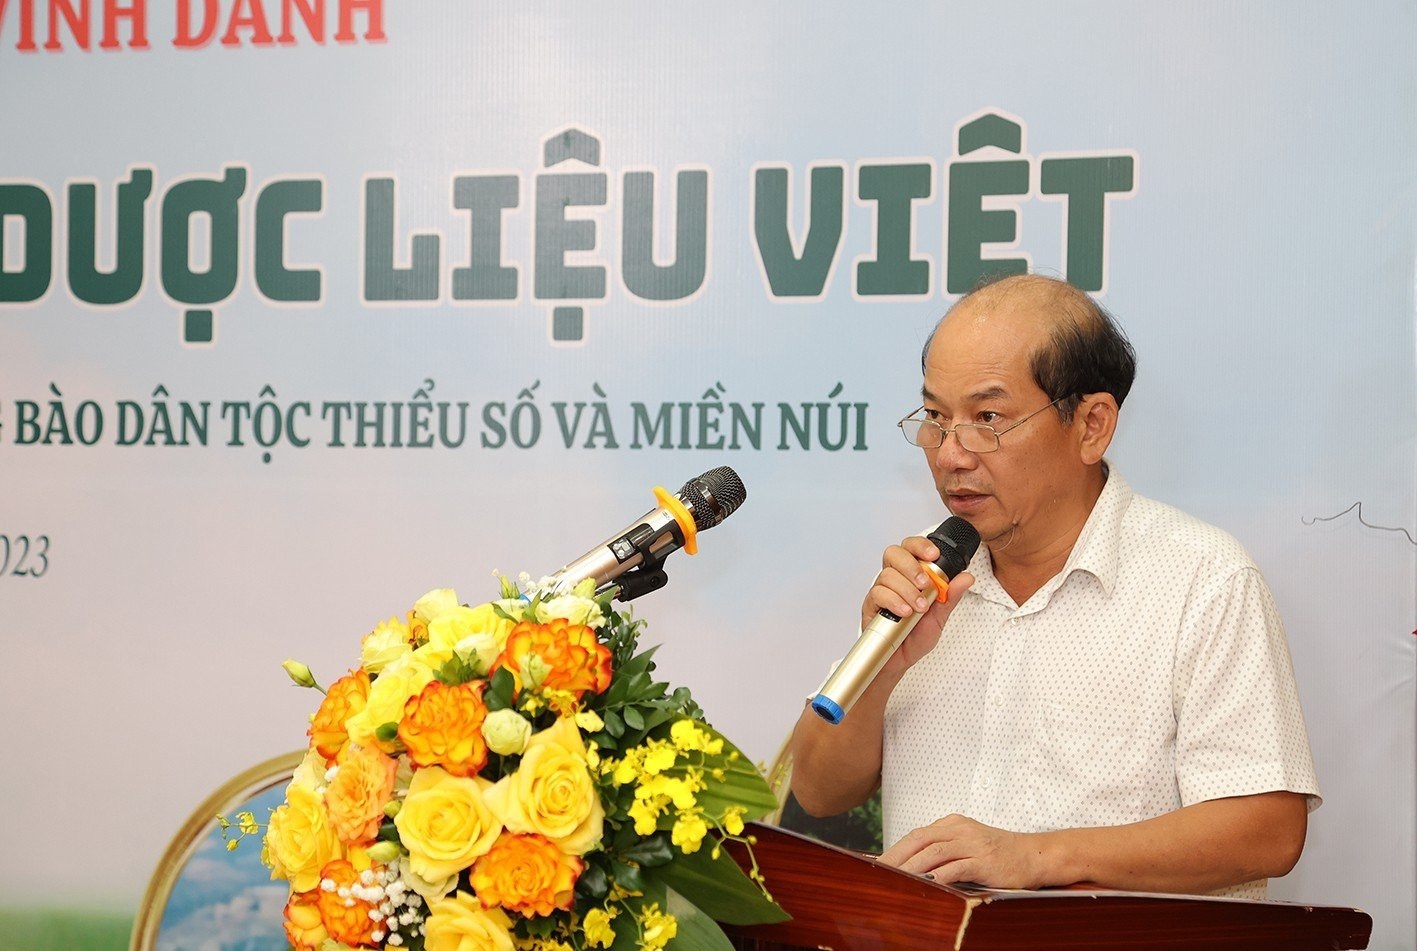 Phát triển dược liệu Việt gắn với phát triển kinh tế - xã hội vùng đồng bào dân tộc thiểu số và miền núi 1